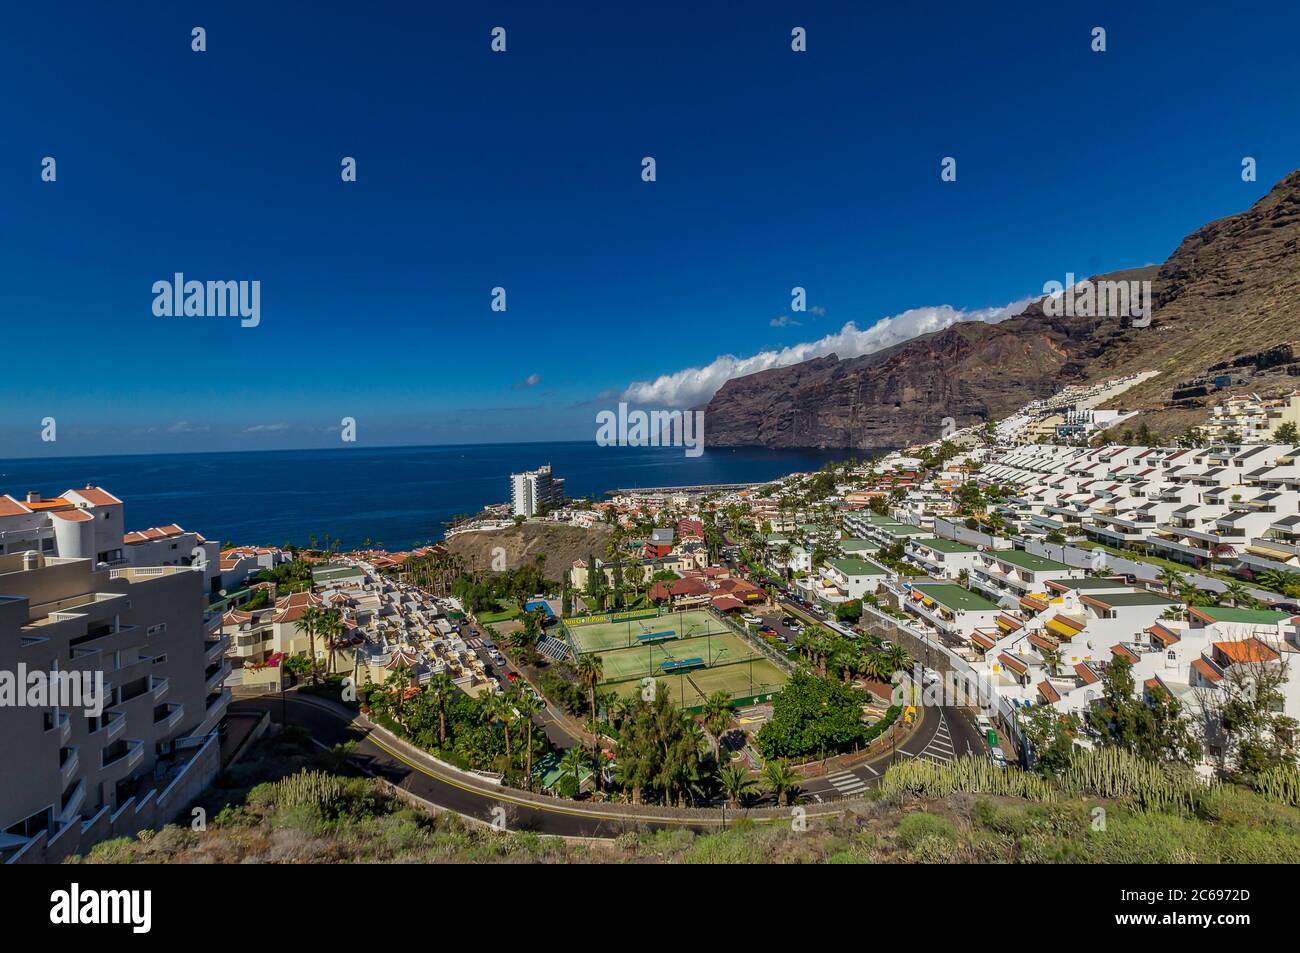 Cliffs of the Los Gigantes, Acantilados de los Gigantes, Tenerife, Spain Stock Photo